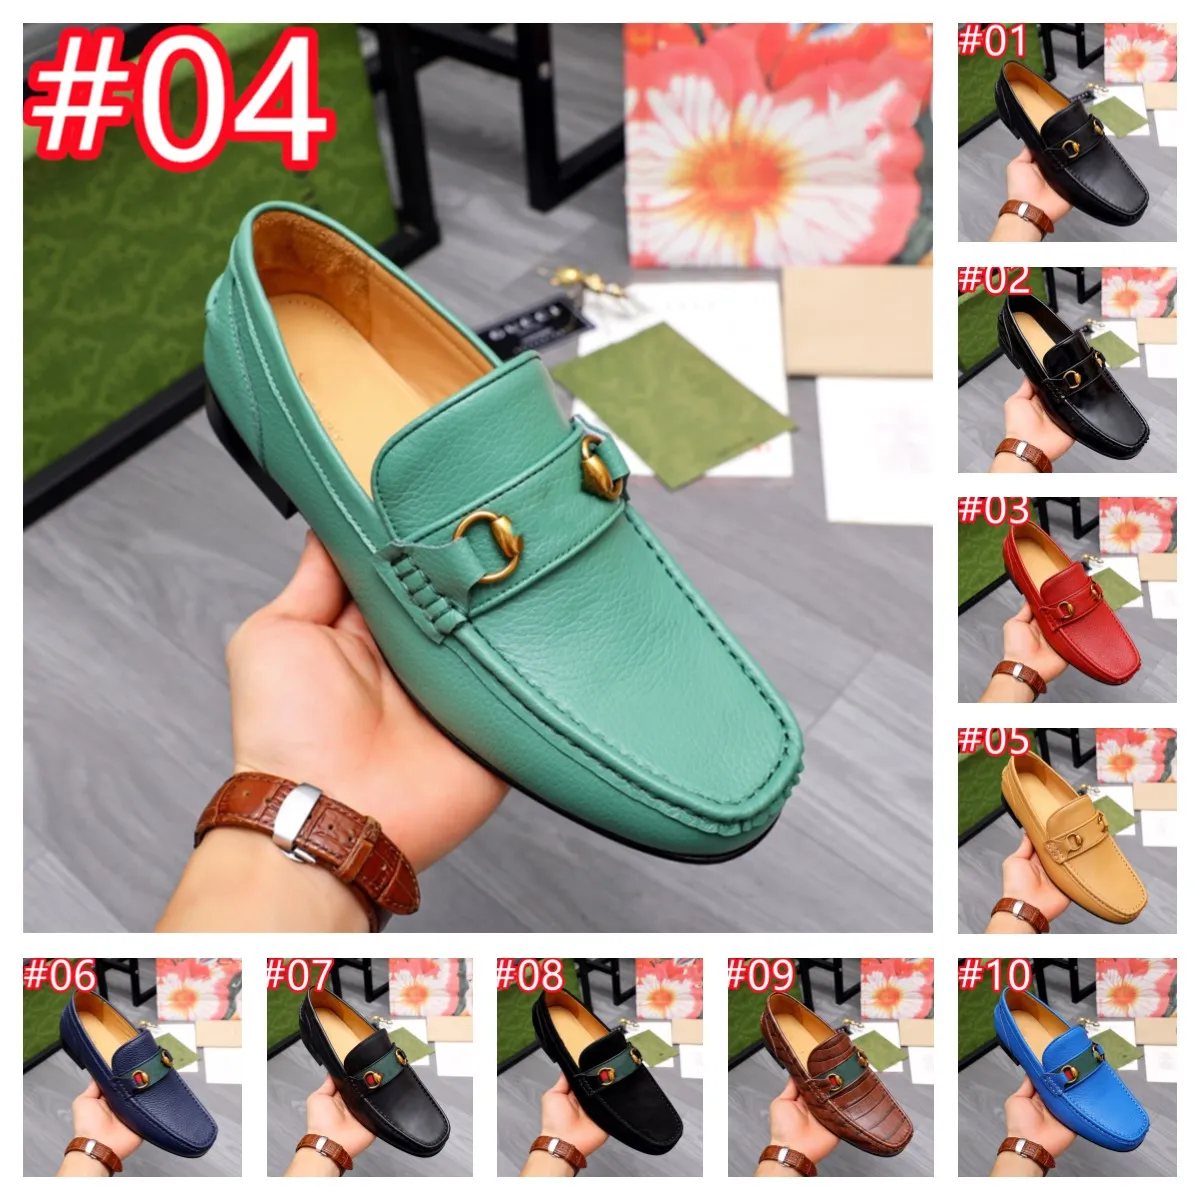 Scarpe in pelle da 11 model scarpe da scarpe casual con tallone a basso tallone scarpe brogue stivali caviglia molla